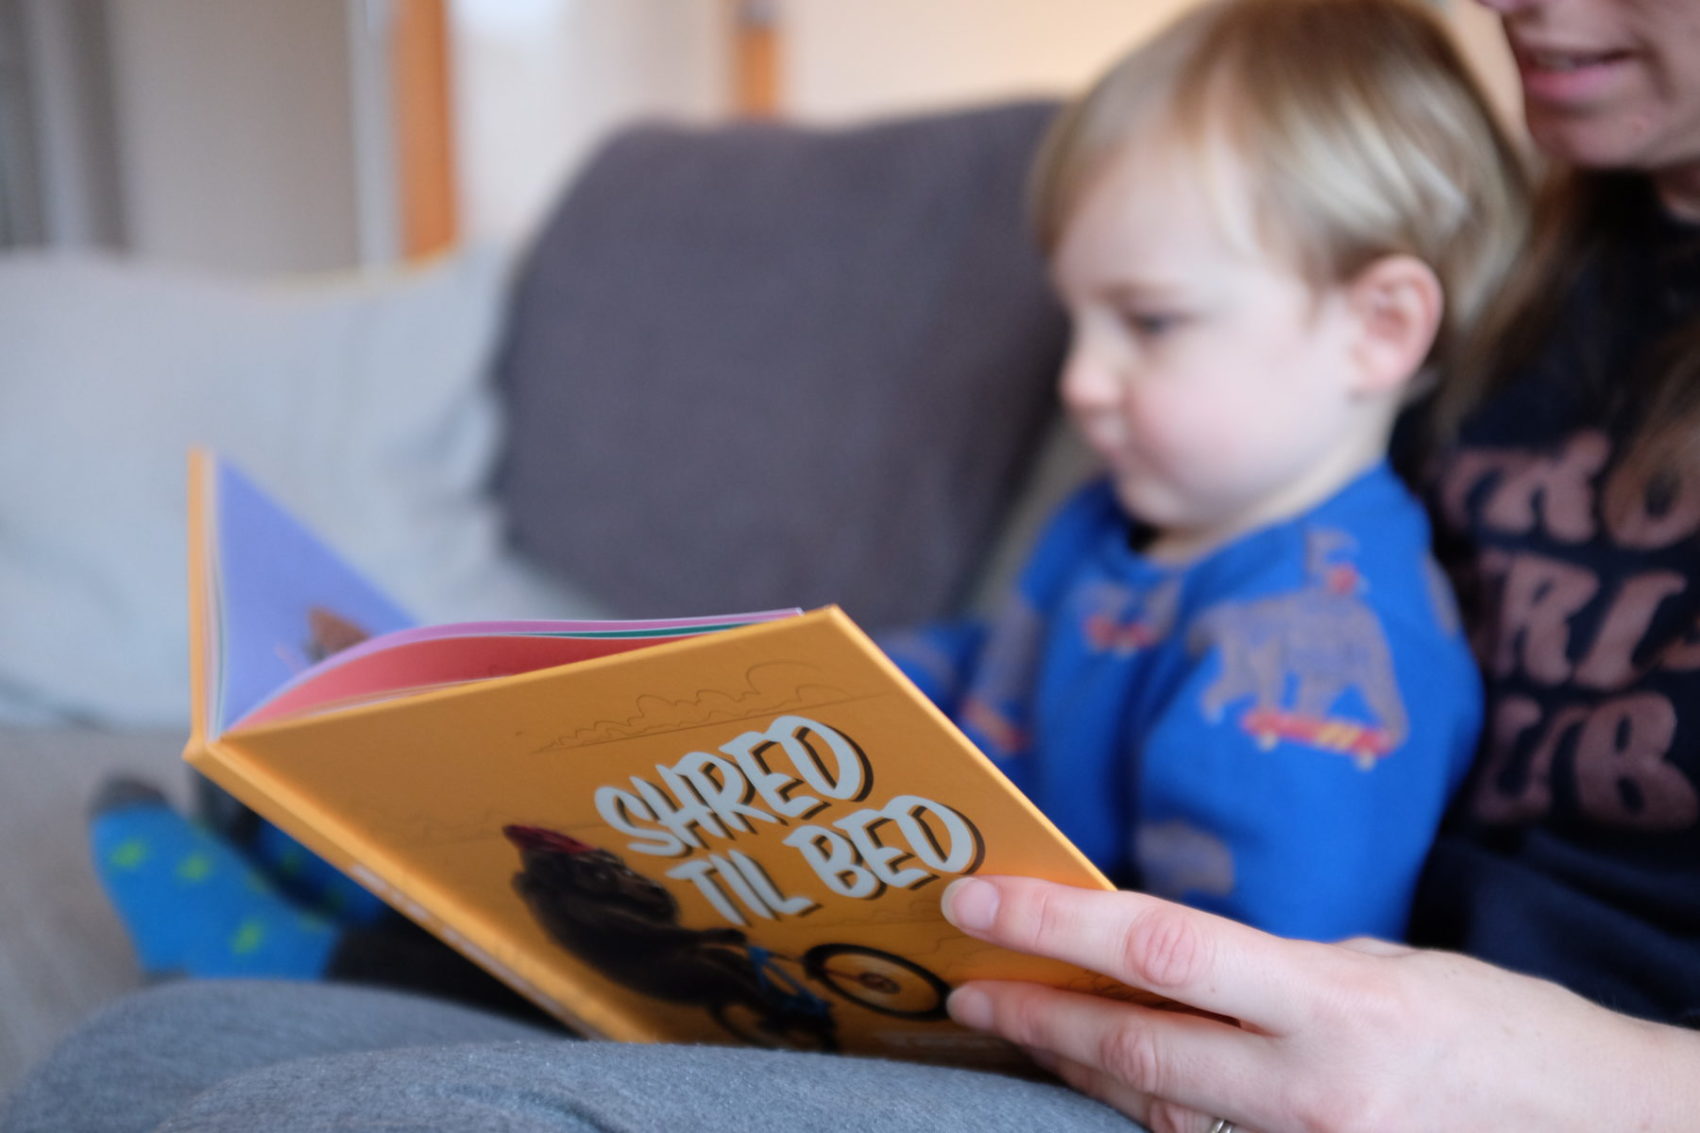 Shred Til Bed – Children’s MTB Themed Animal Alphabet Book